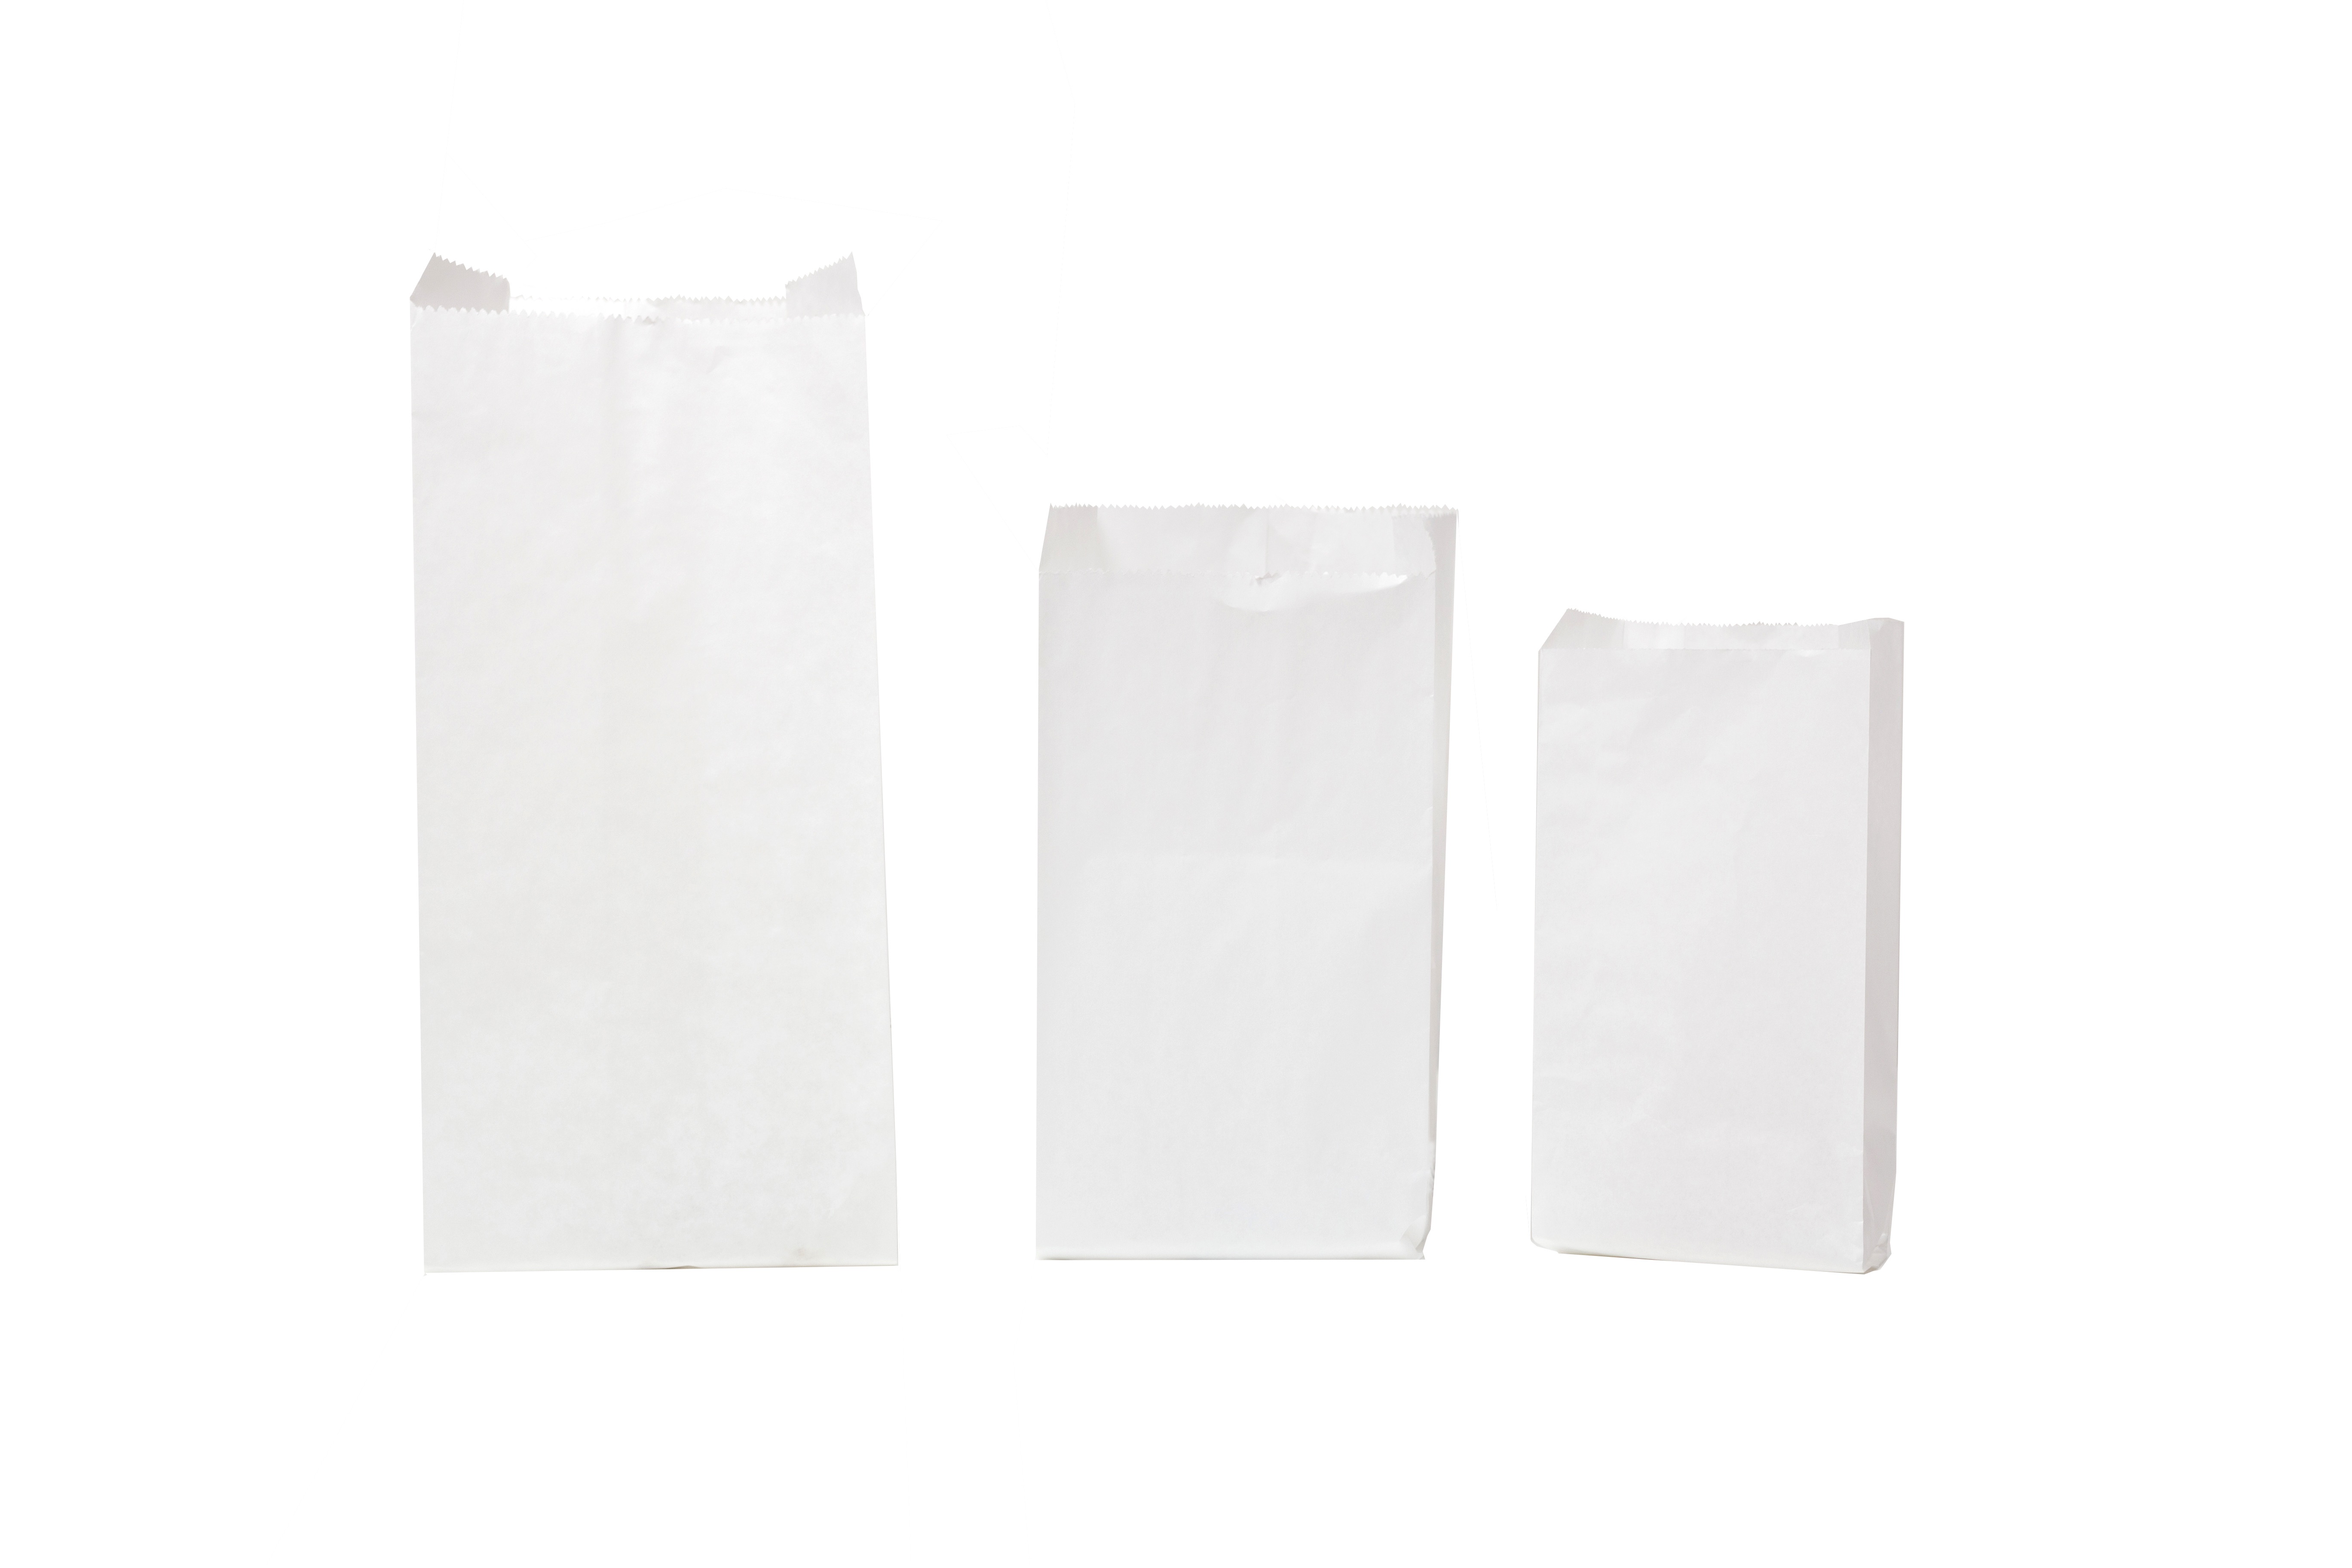 SACCHETTI BIANCHI SKB45 - Sacchetti in carta - Vendita all'ingrosso di sacchetti  carta per alimenti, vassoi, contenitori per alimenti